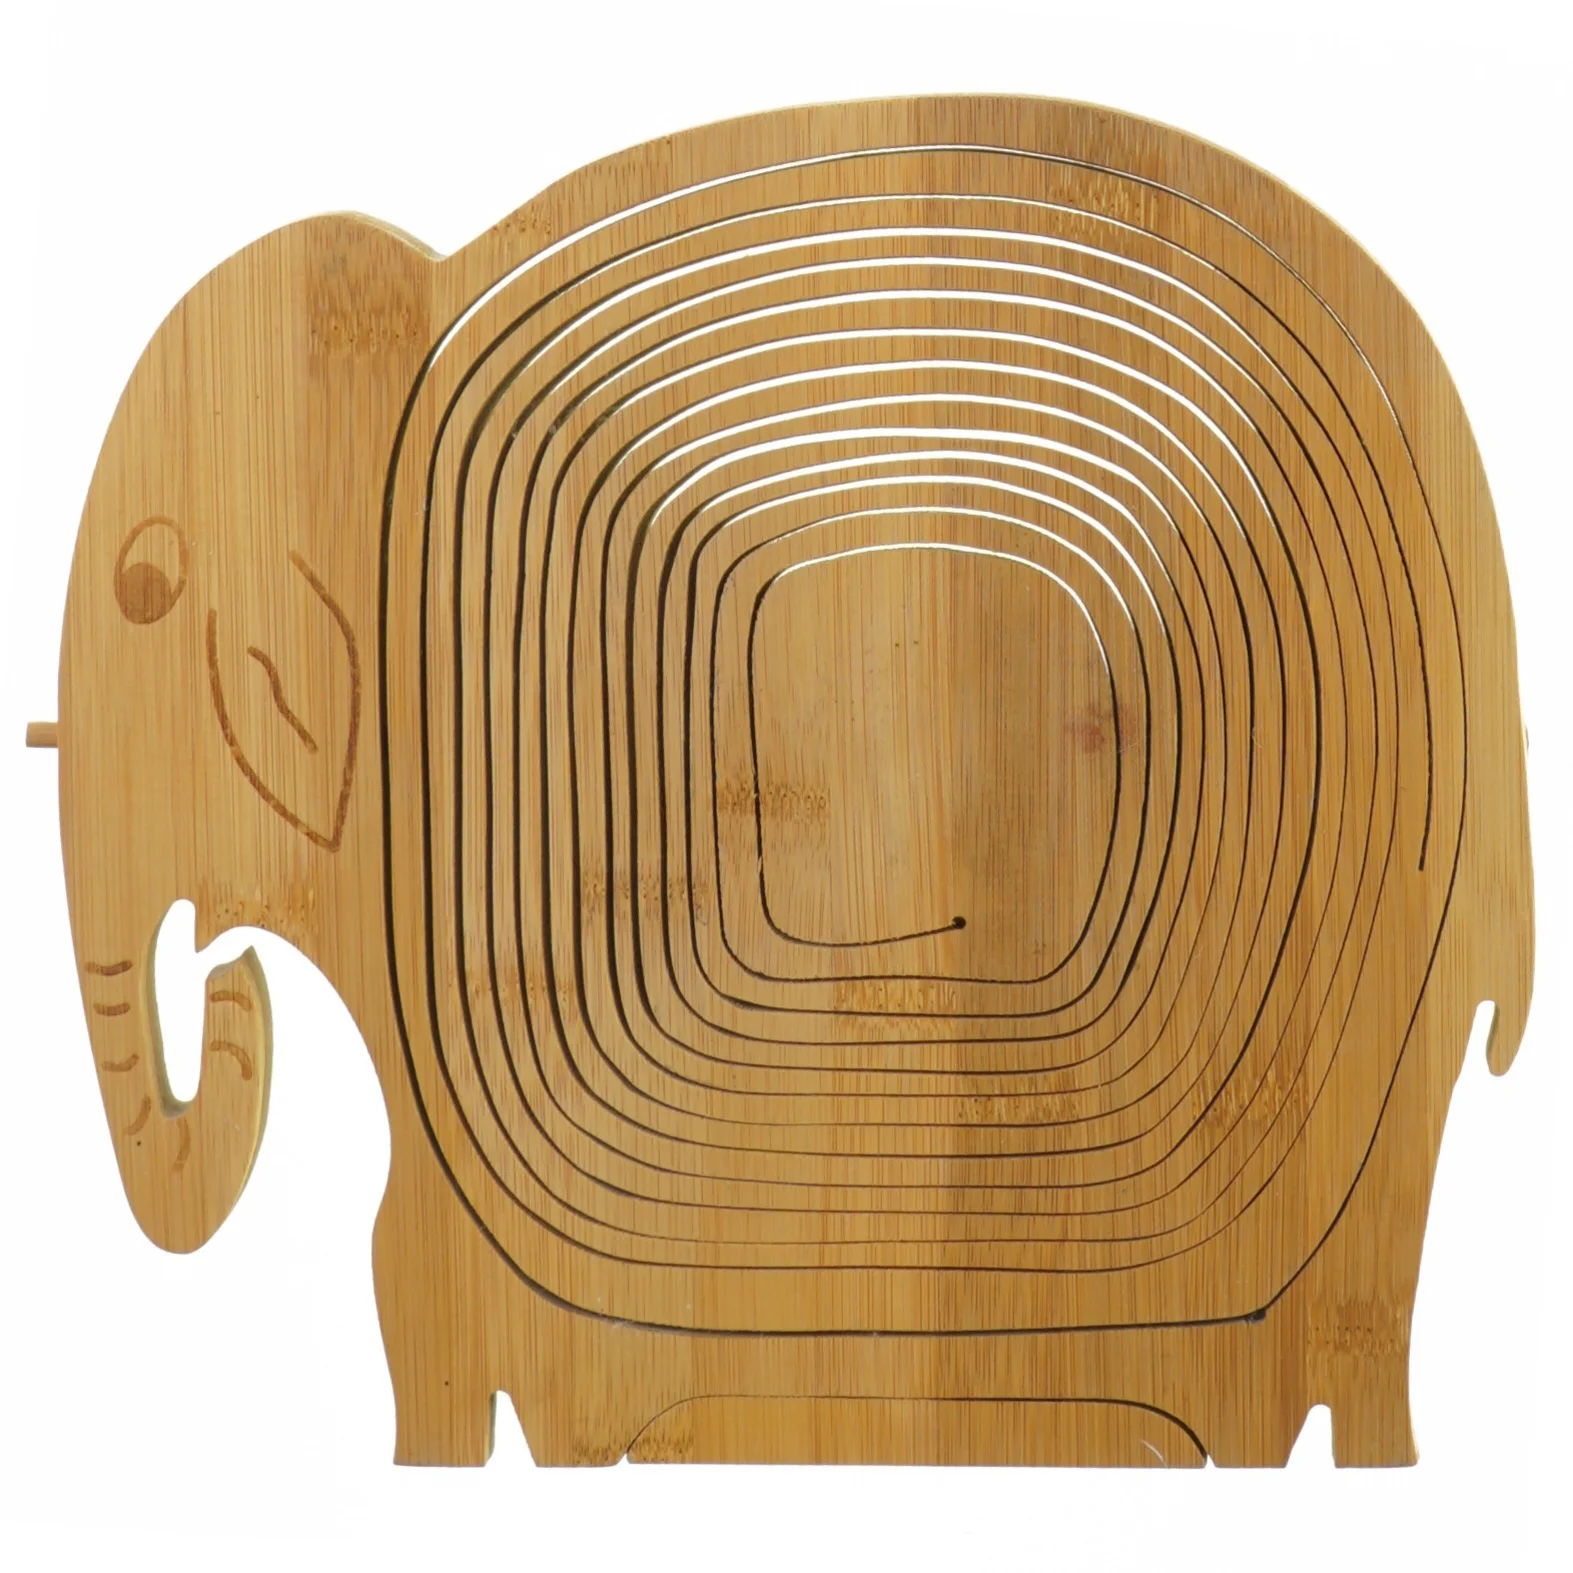 Rædsel Dolke udkast Elefantskål i træ (str. 25 cm) | Orderly.shop